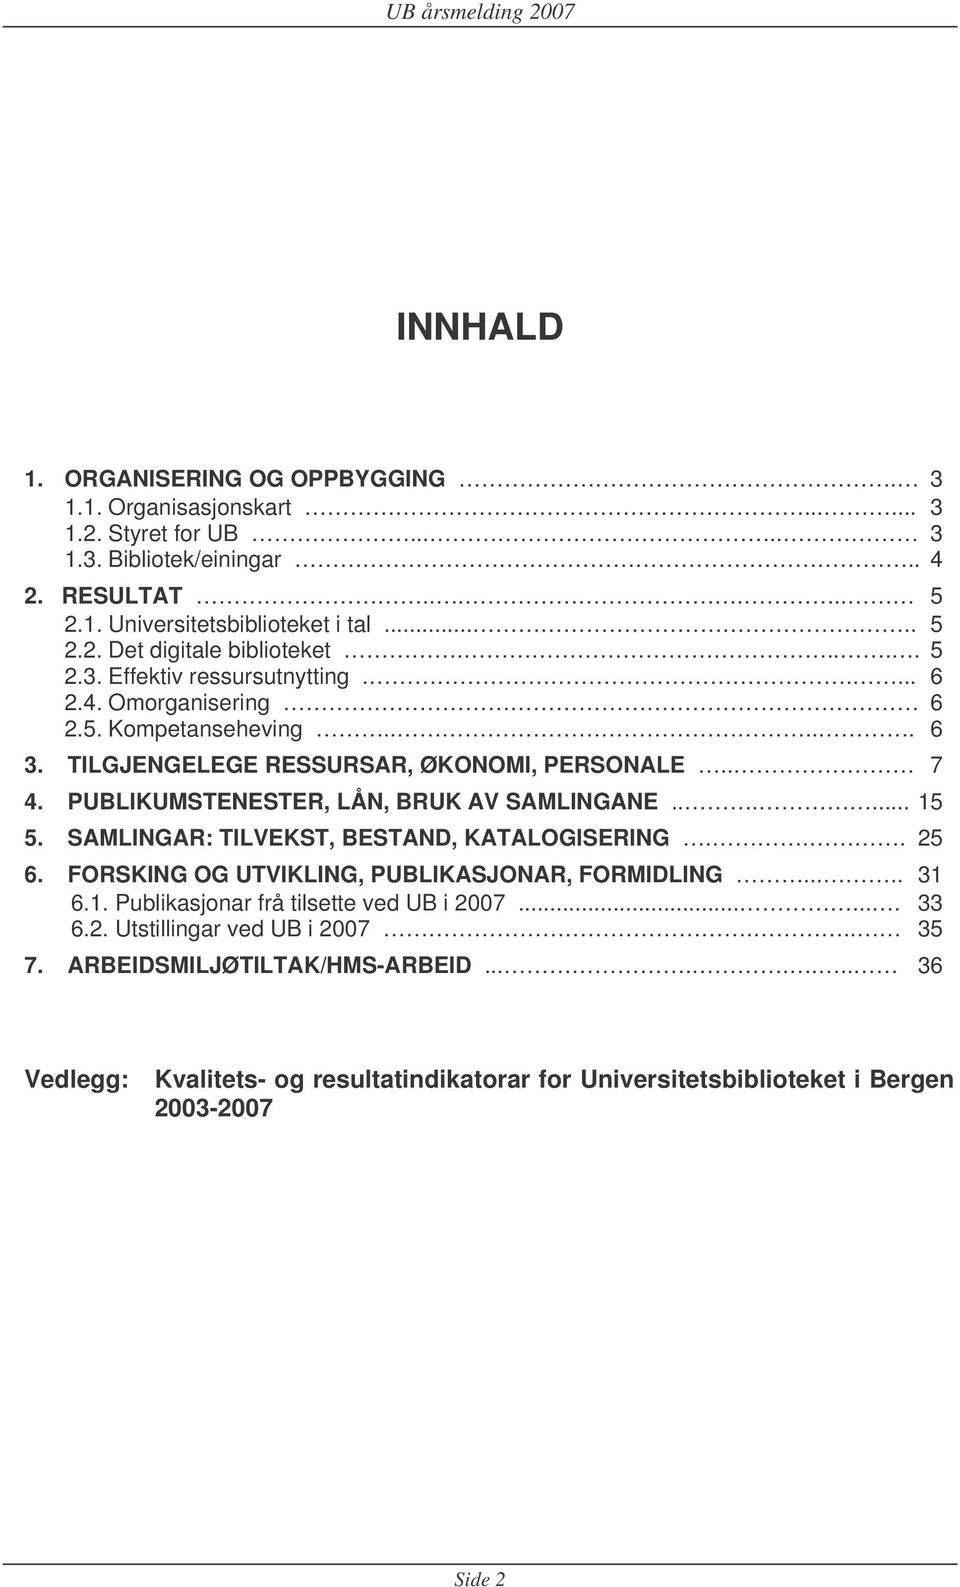 PUBLIKUMSTENESTER, LÅN, BRUK AV SAMLINGANE...... 15 5. SAMLINGAR: TILVEKST, BESTAND, KATALOGISERING... 25 6. FORSKING OG UTVIKLING, PUBLIKASJONAR, FORMIDLING..... 31 6.1. Publikasjonar frå tilsette ved UB i 2007.